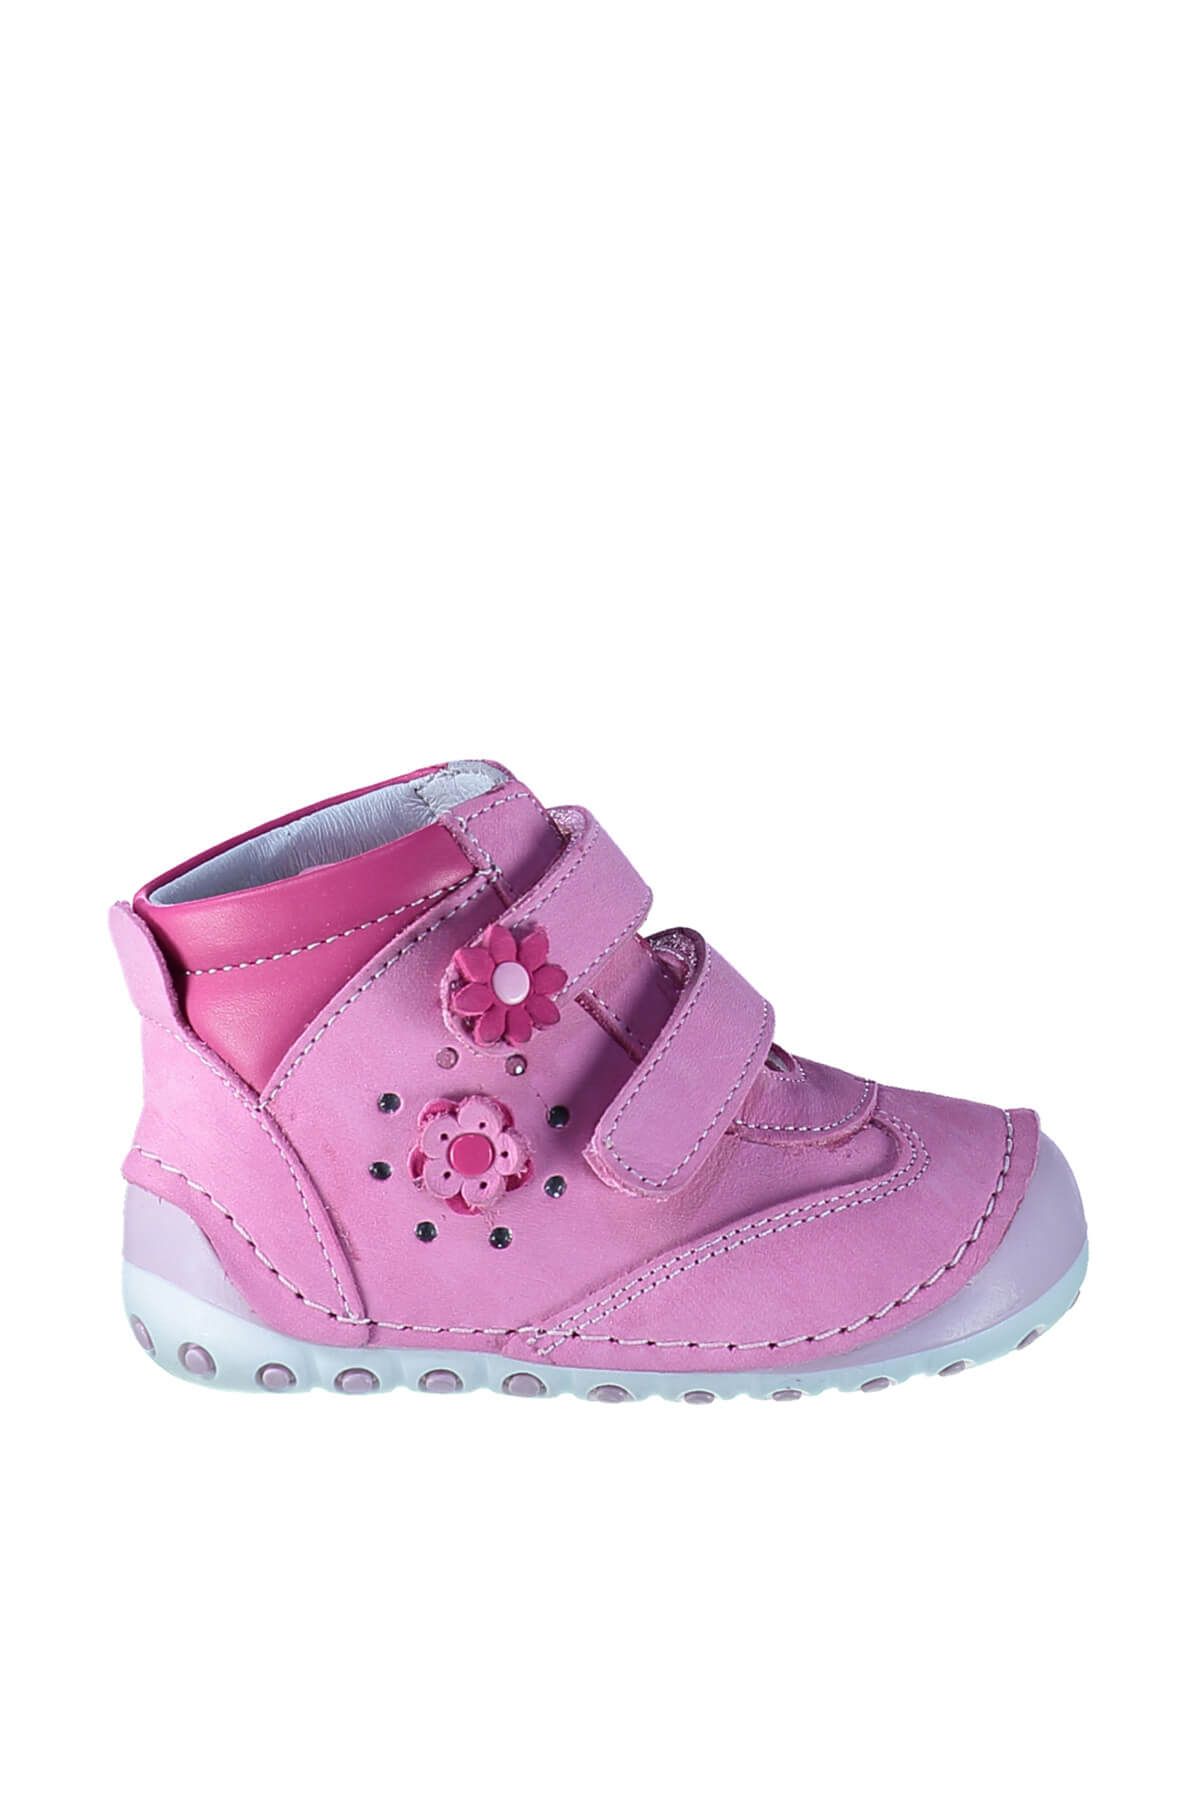 Minican Pembe Hakiki Deri Kız Çocuk Ayakkabı